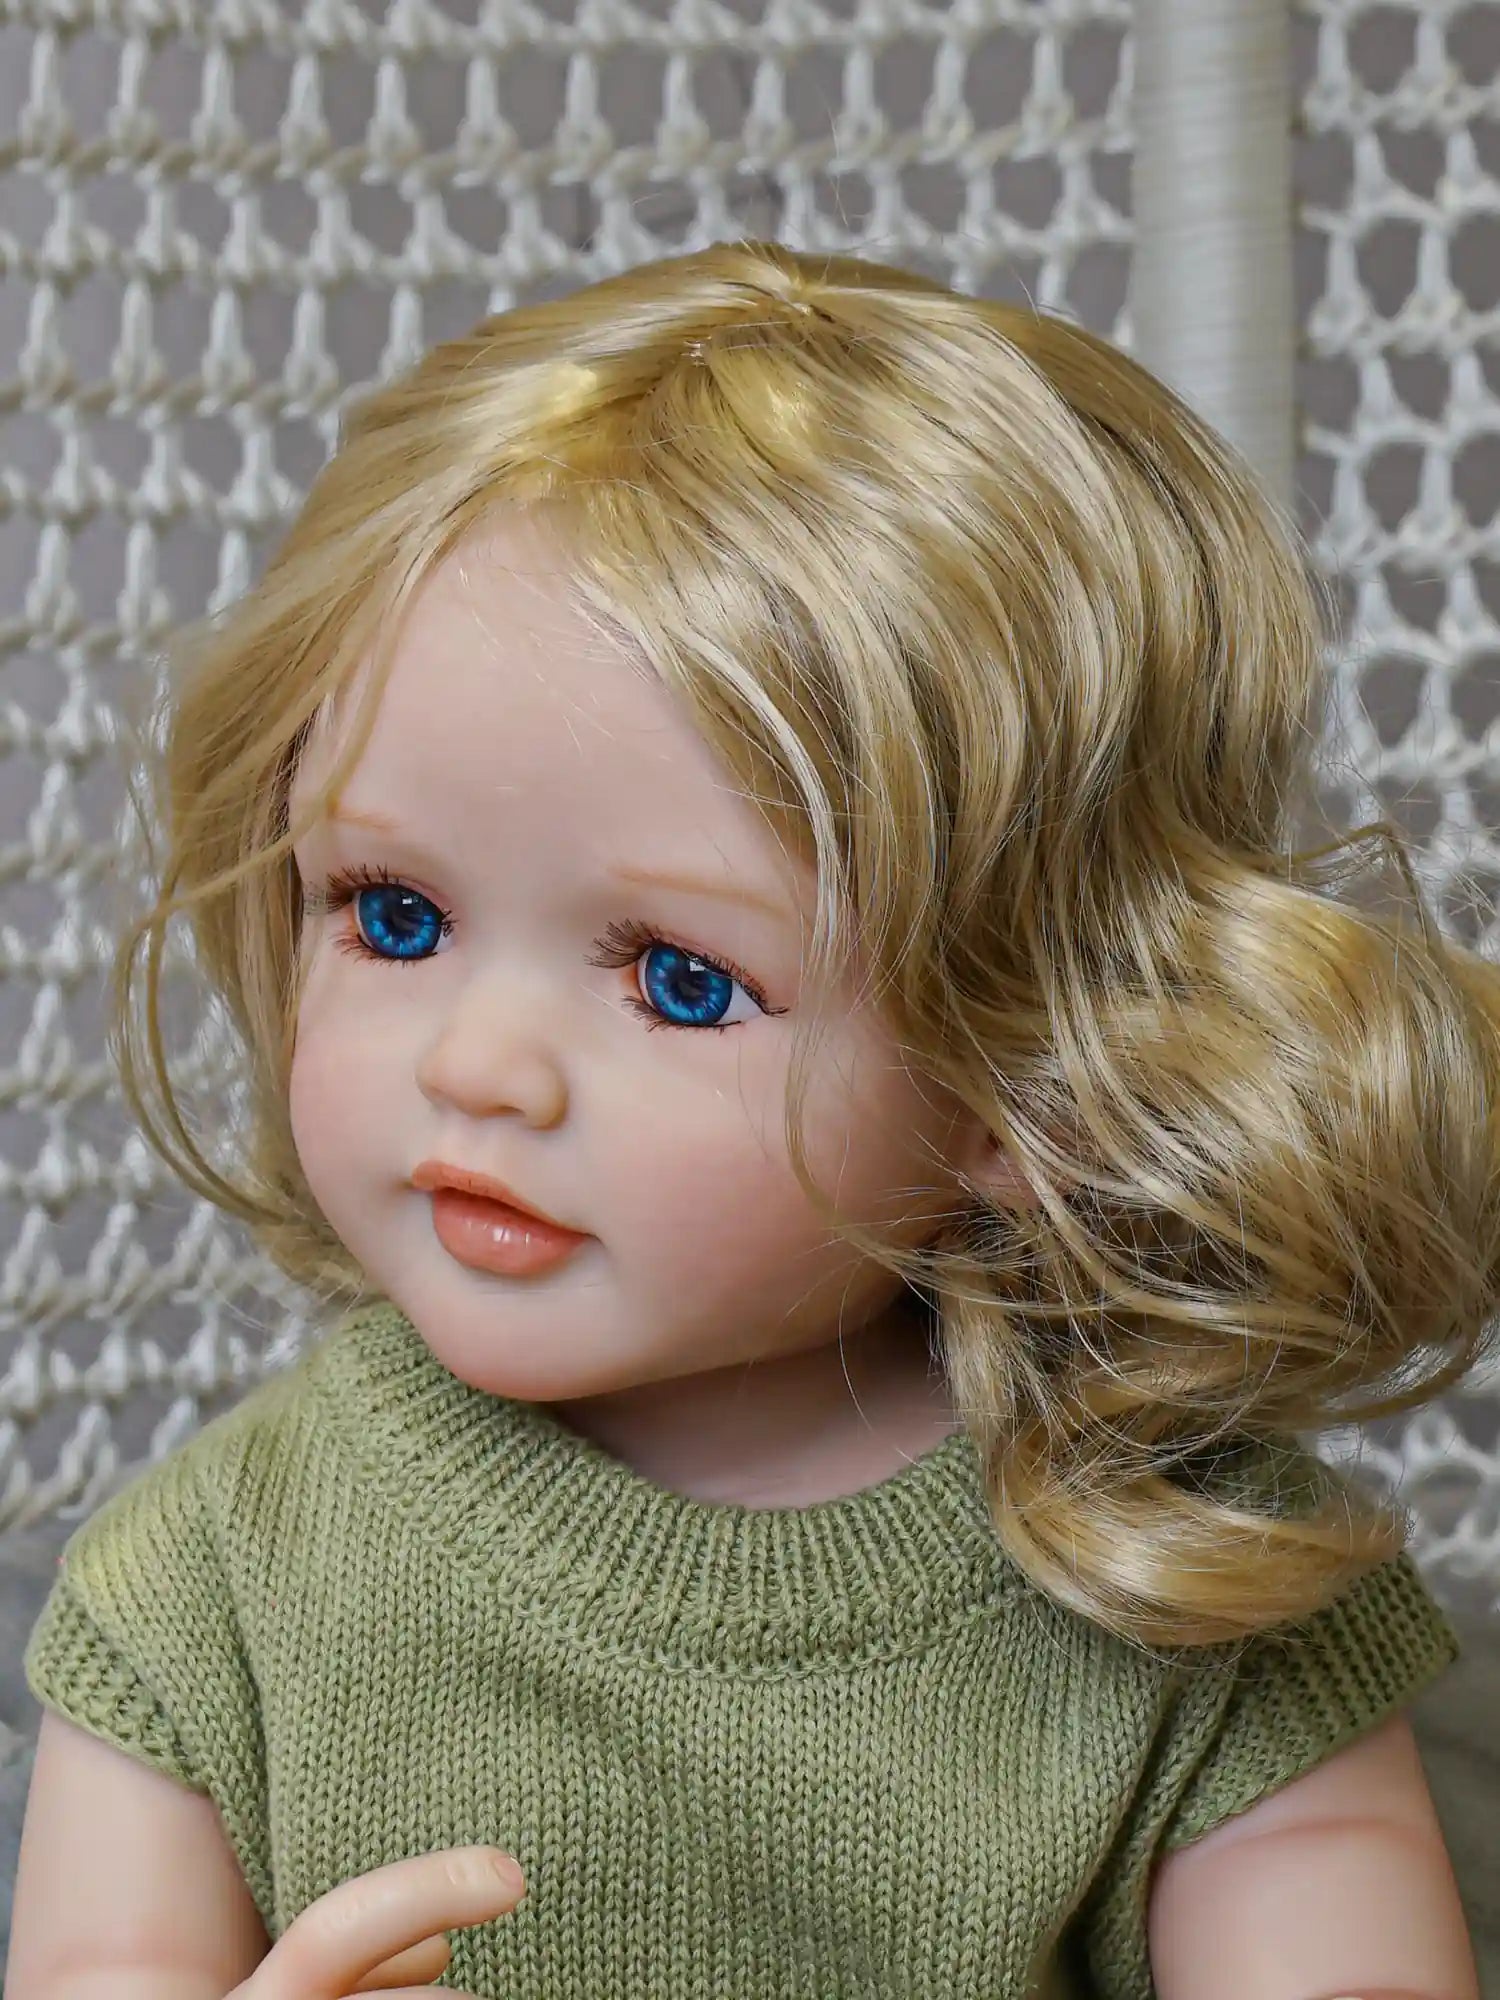 Chimidoll - Niedliche Kleinkindpuppe mit grünem Outfit, gelben Haaren und blauen Augen.